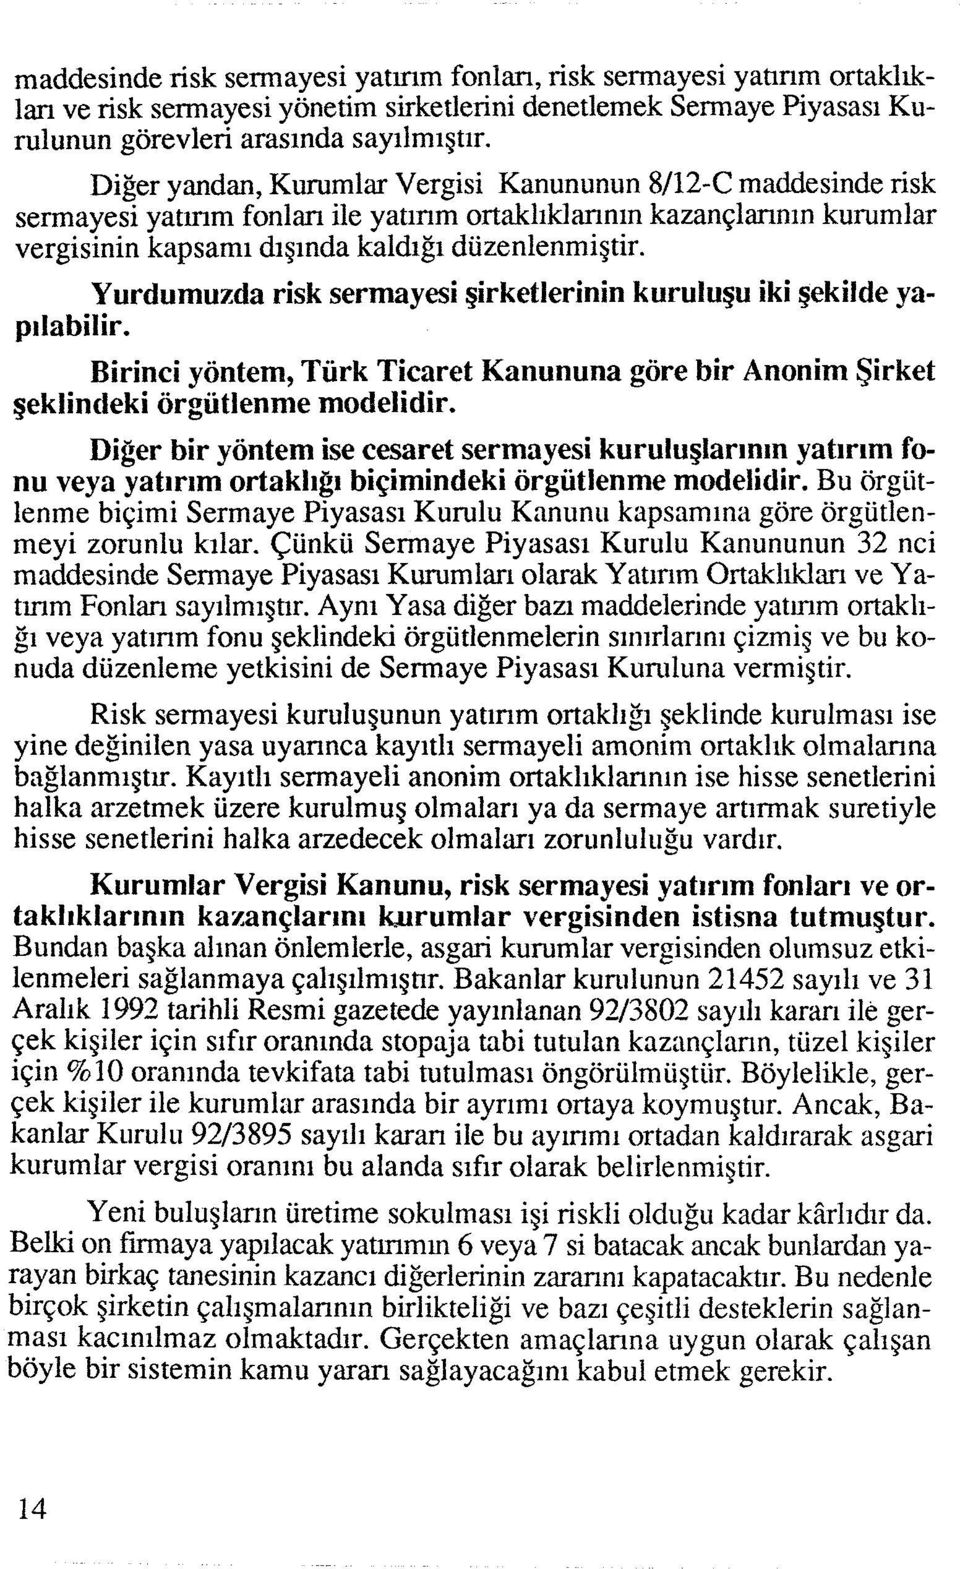 Yurdumuzda risk sermayesi ~irketlerinin kurulu~u iki ~ekilde yapllabilir. Birinci yontem, Turk Ticaret Kanununa gore bir Anonim Sirket geklincieki orgiitlenme modelidir.